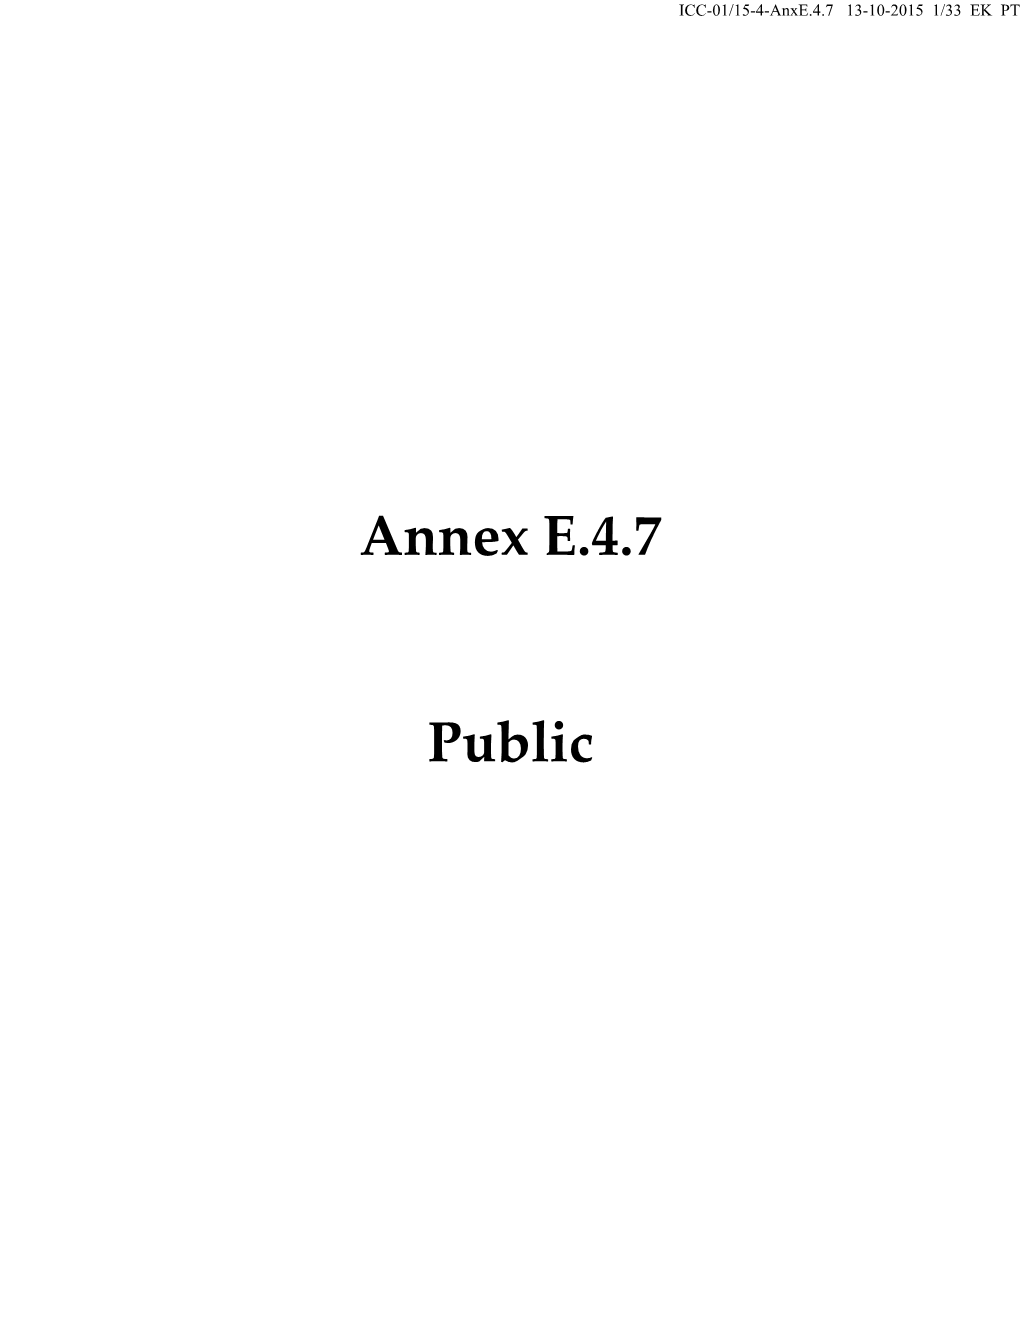 Annex E.4.7 Public